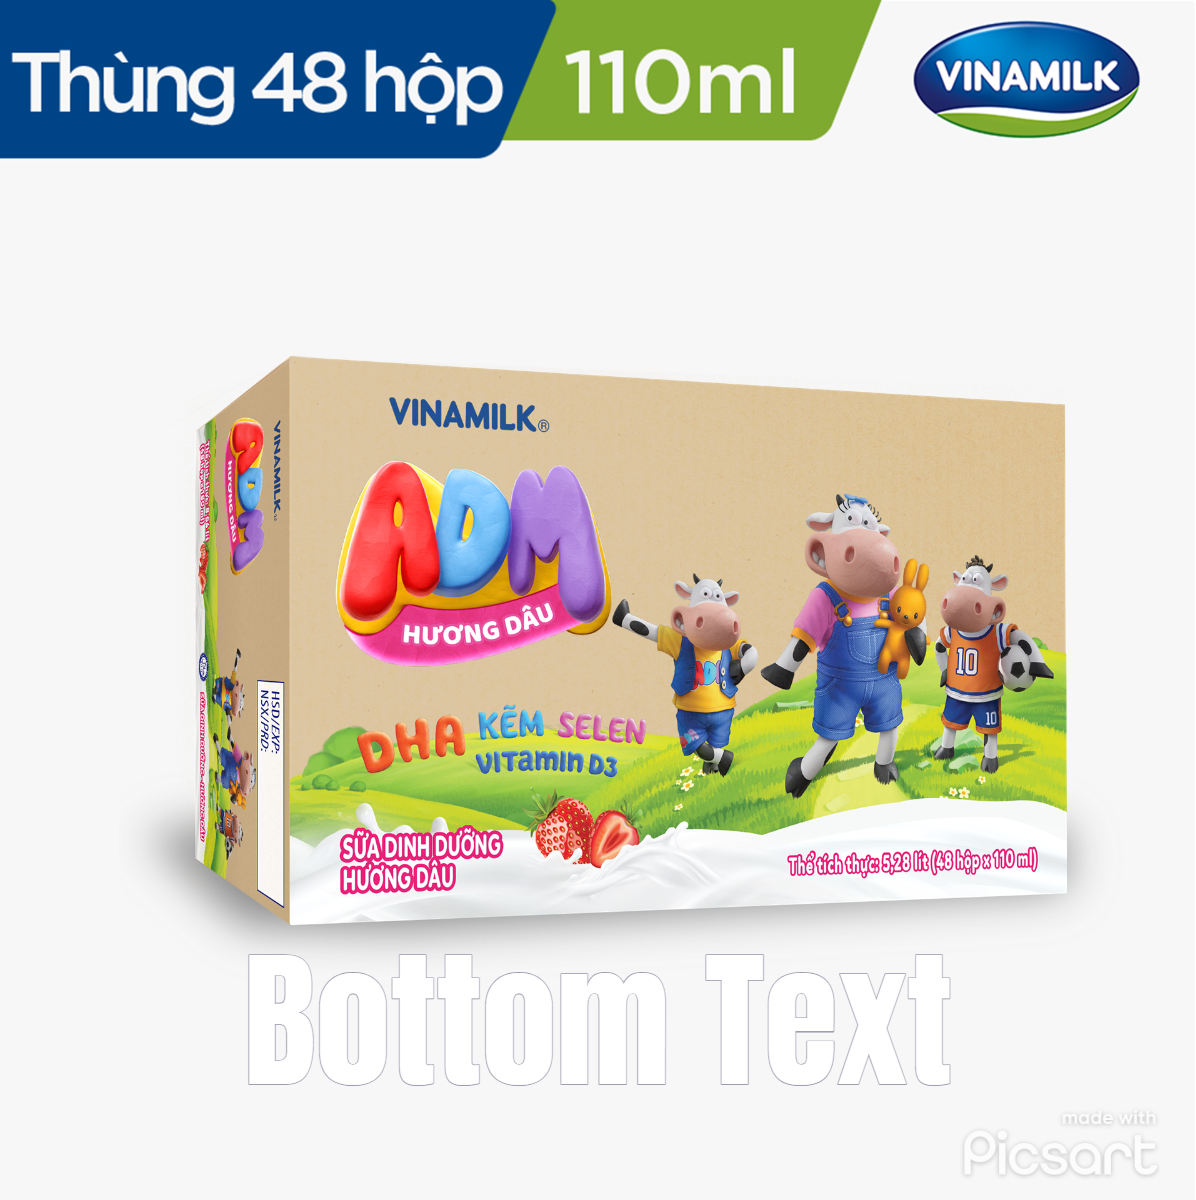 Sữa dinh dưỡng Hương Dâu Vinamilk ADM - Thùng 48 hộp 110ml